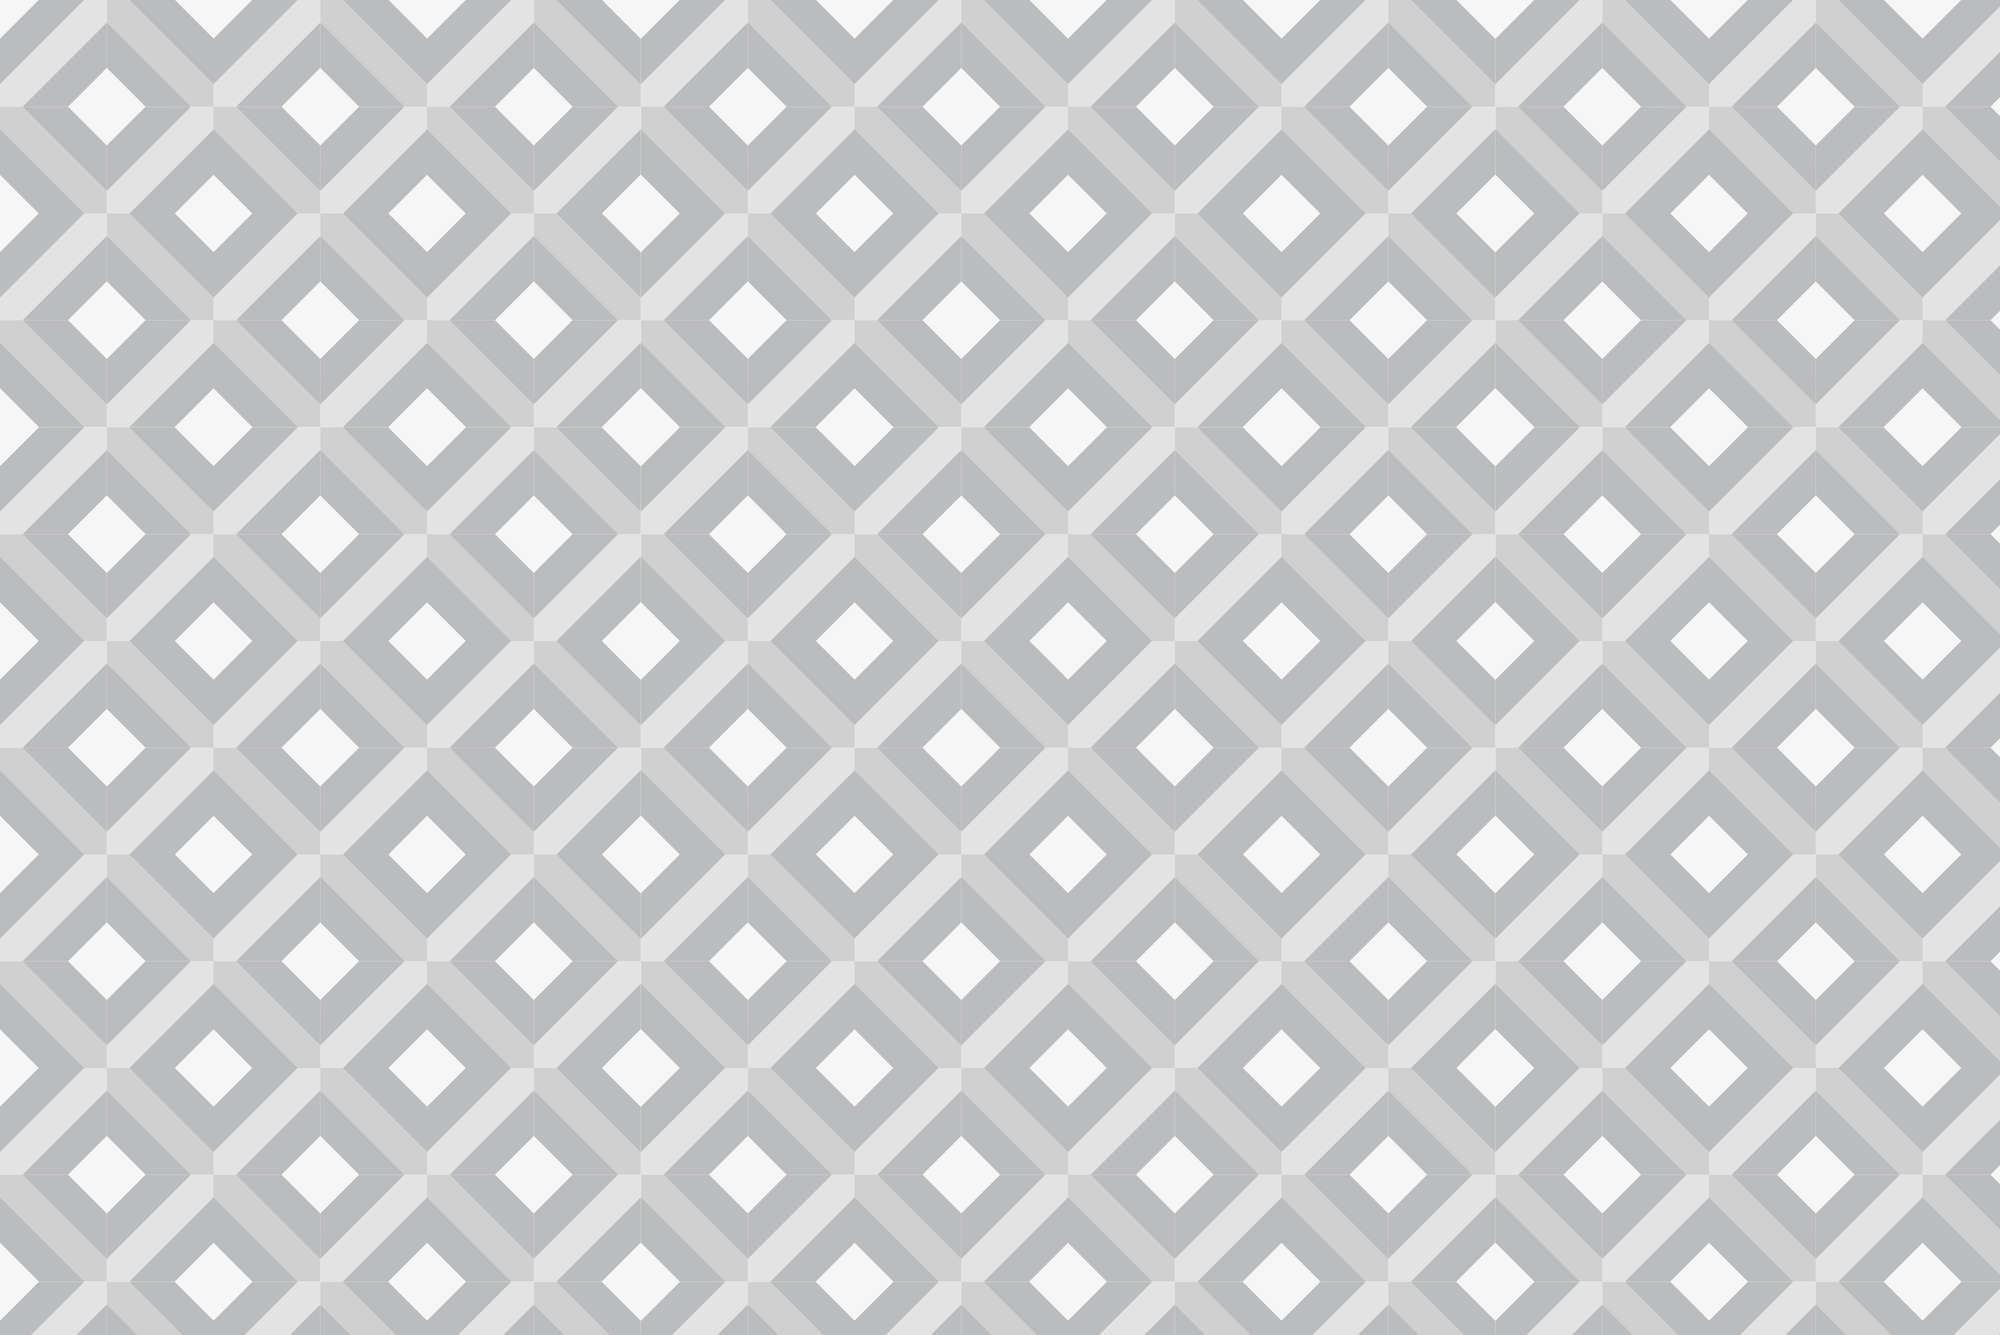             Designbehang doosmotief met kleine vierkantjes grijs op mat glad vlies
        